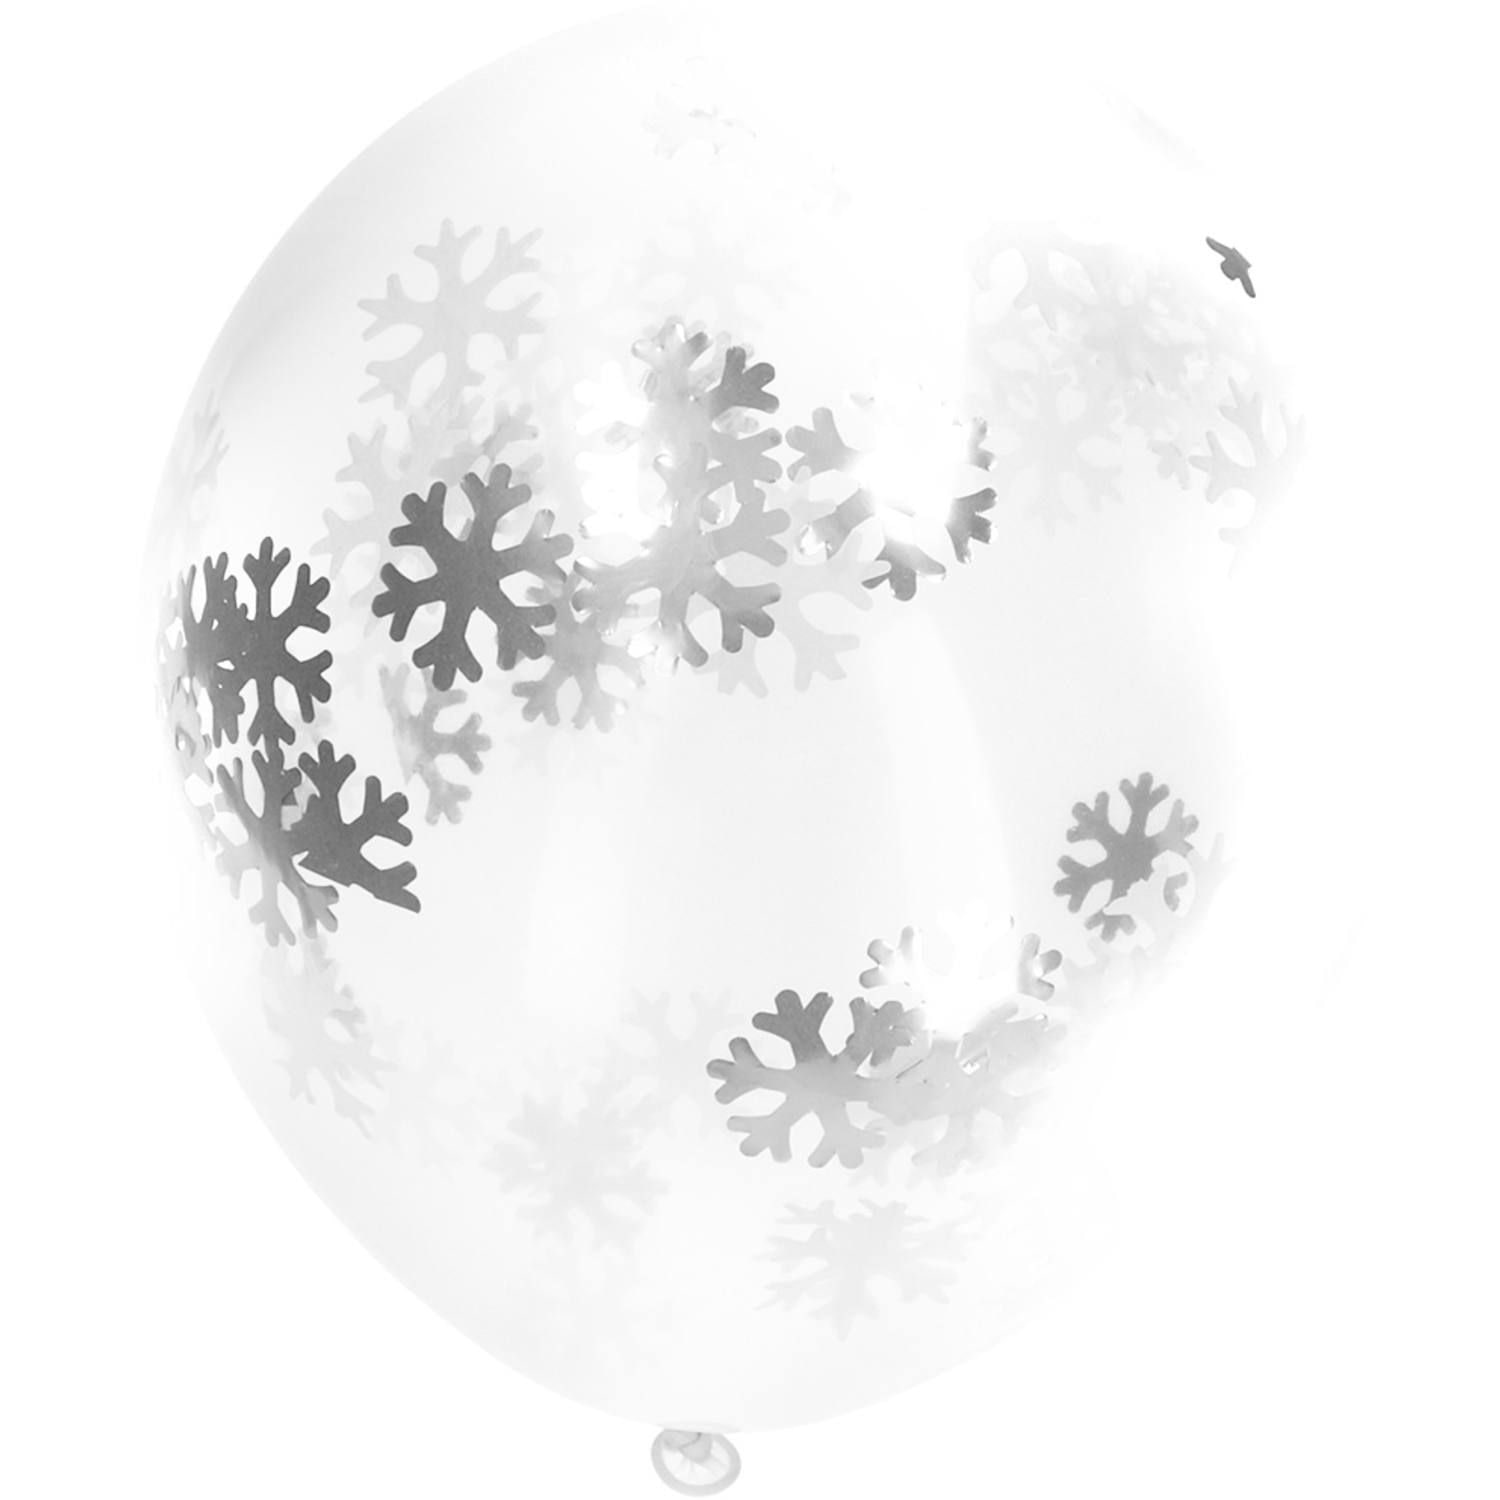 Sneeuwvlokken confetti ballonnen 4 stuks